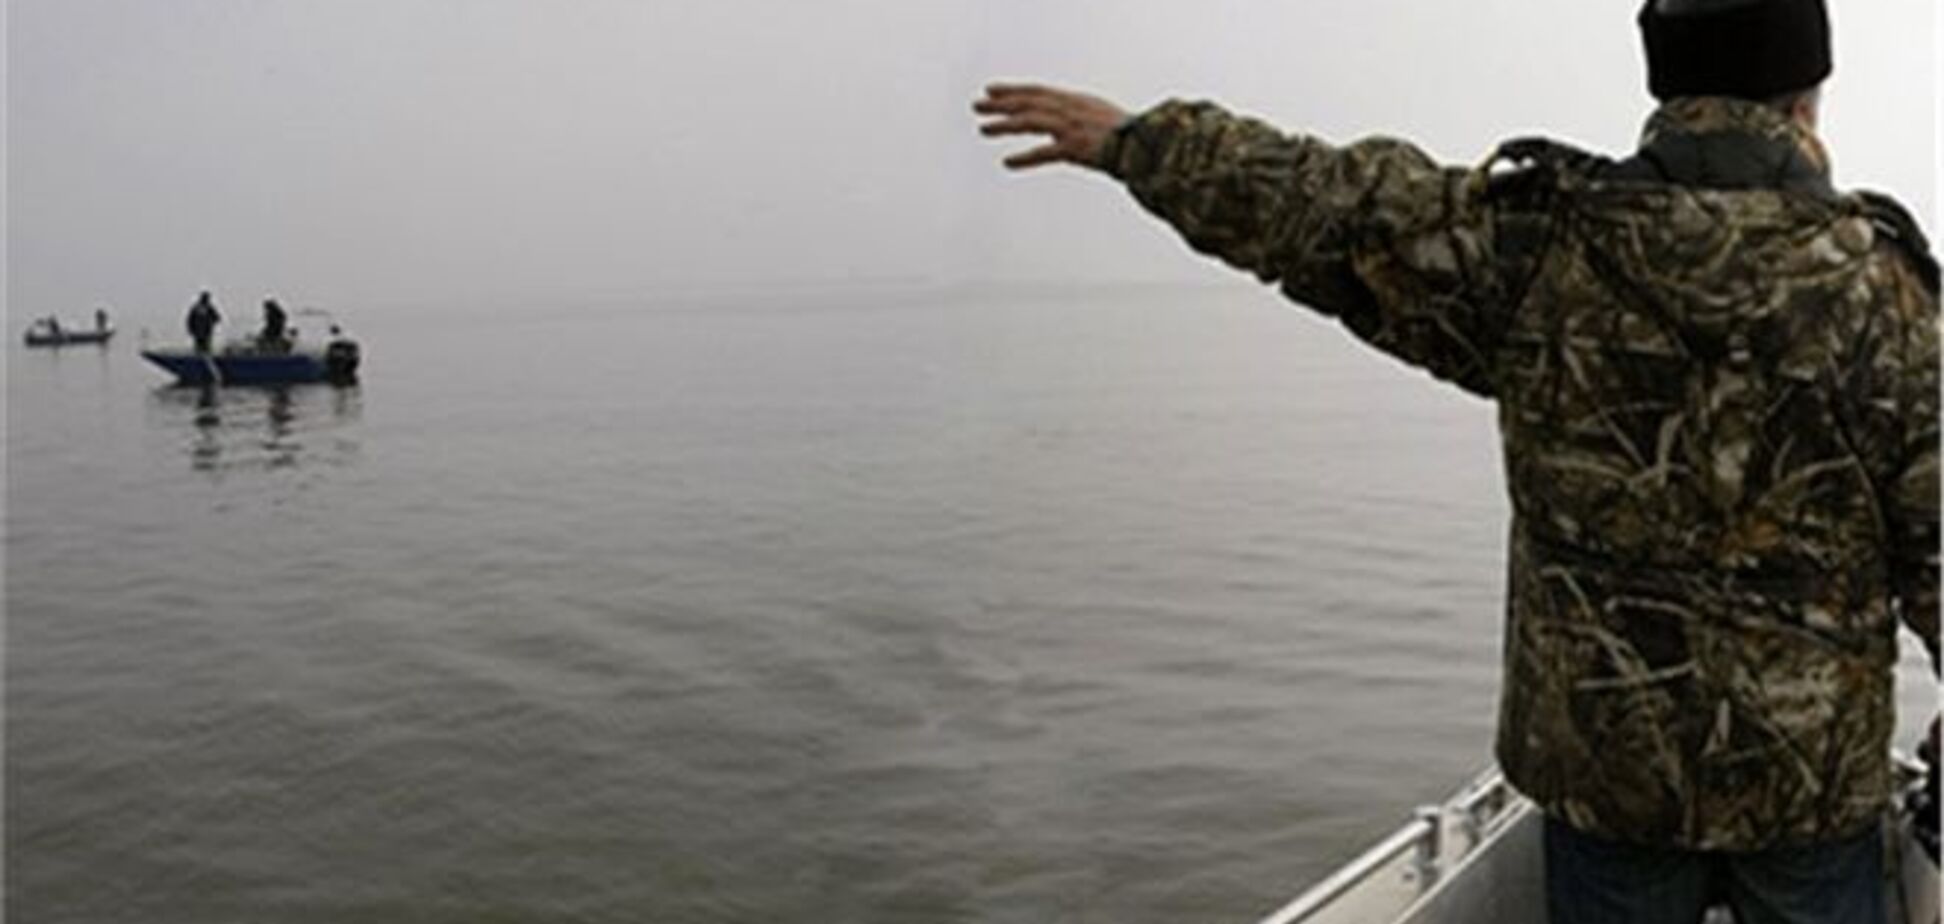 Київ домагається повернення рибалки, постраждалого в Азовському морі - МЗС